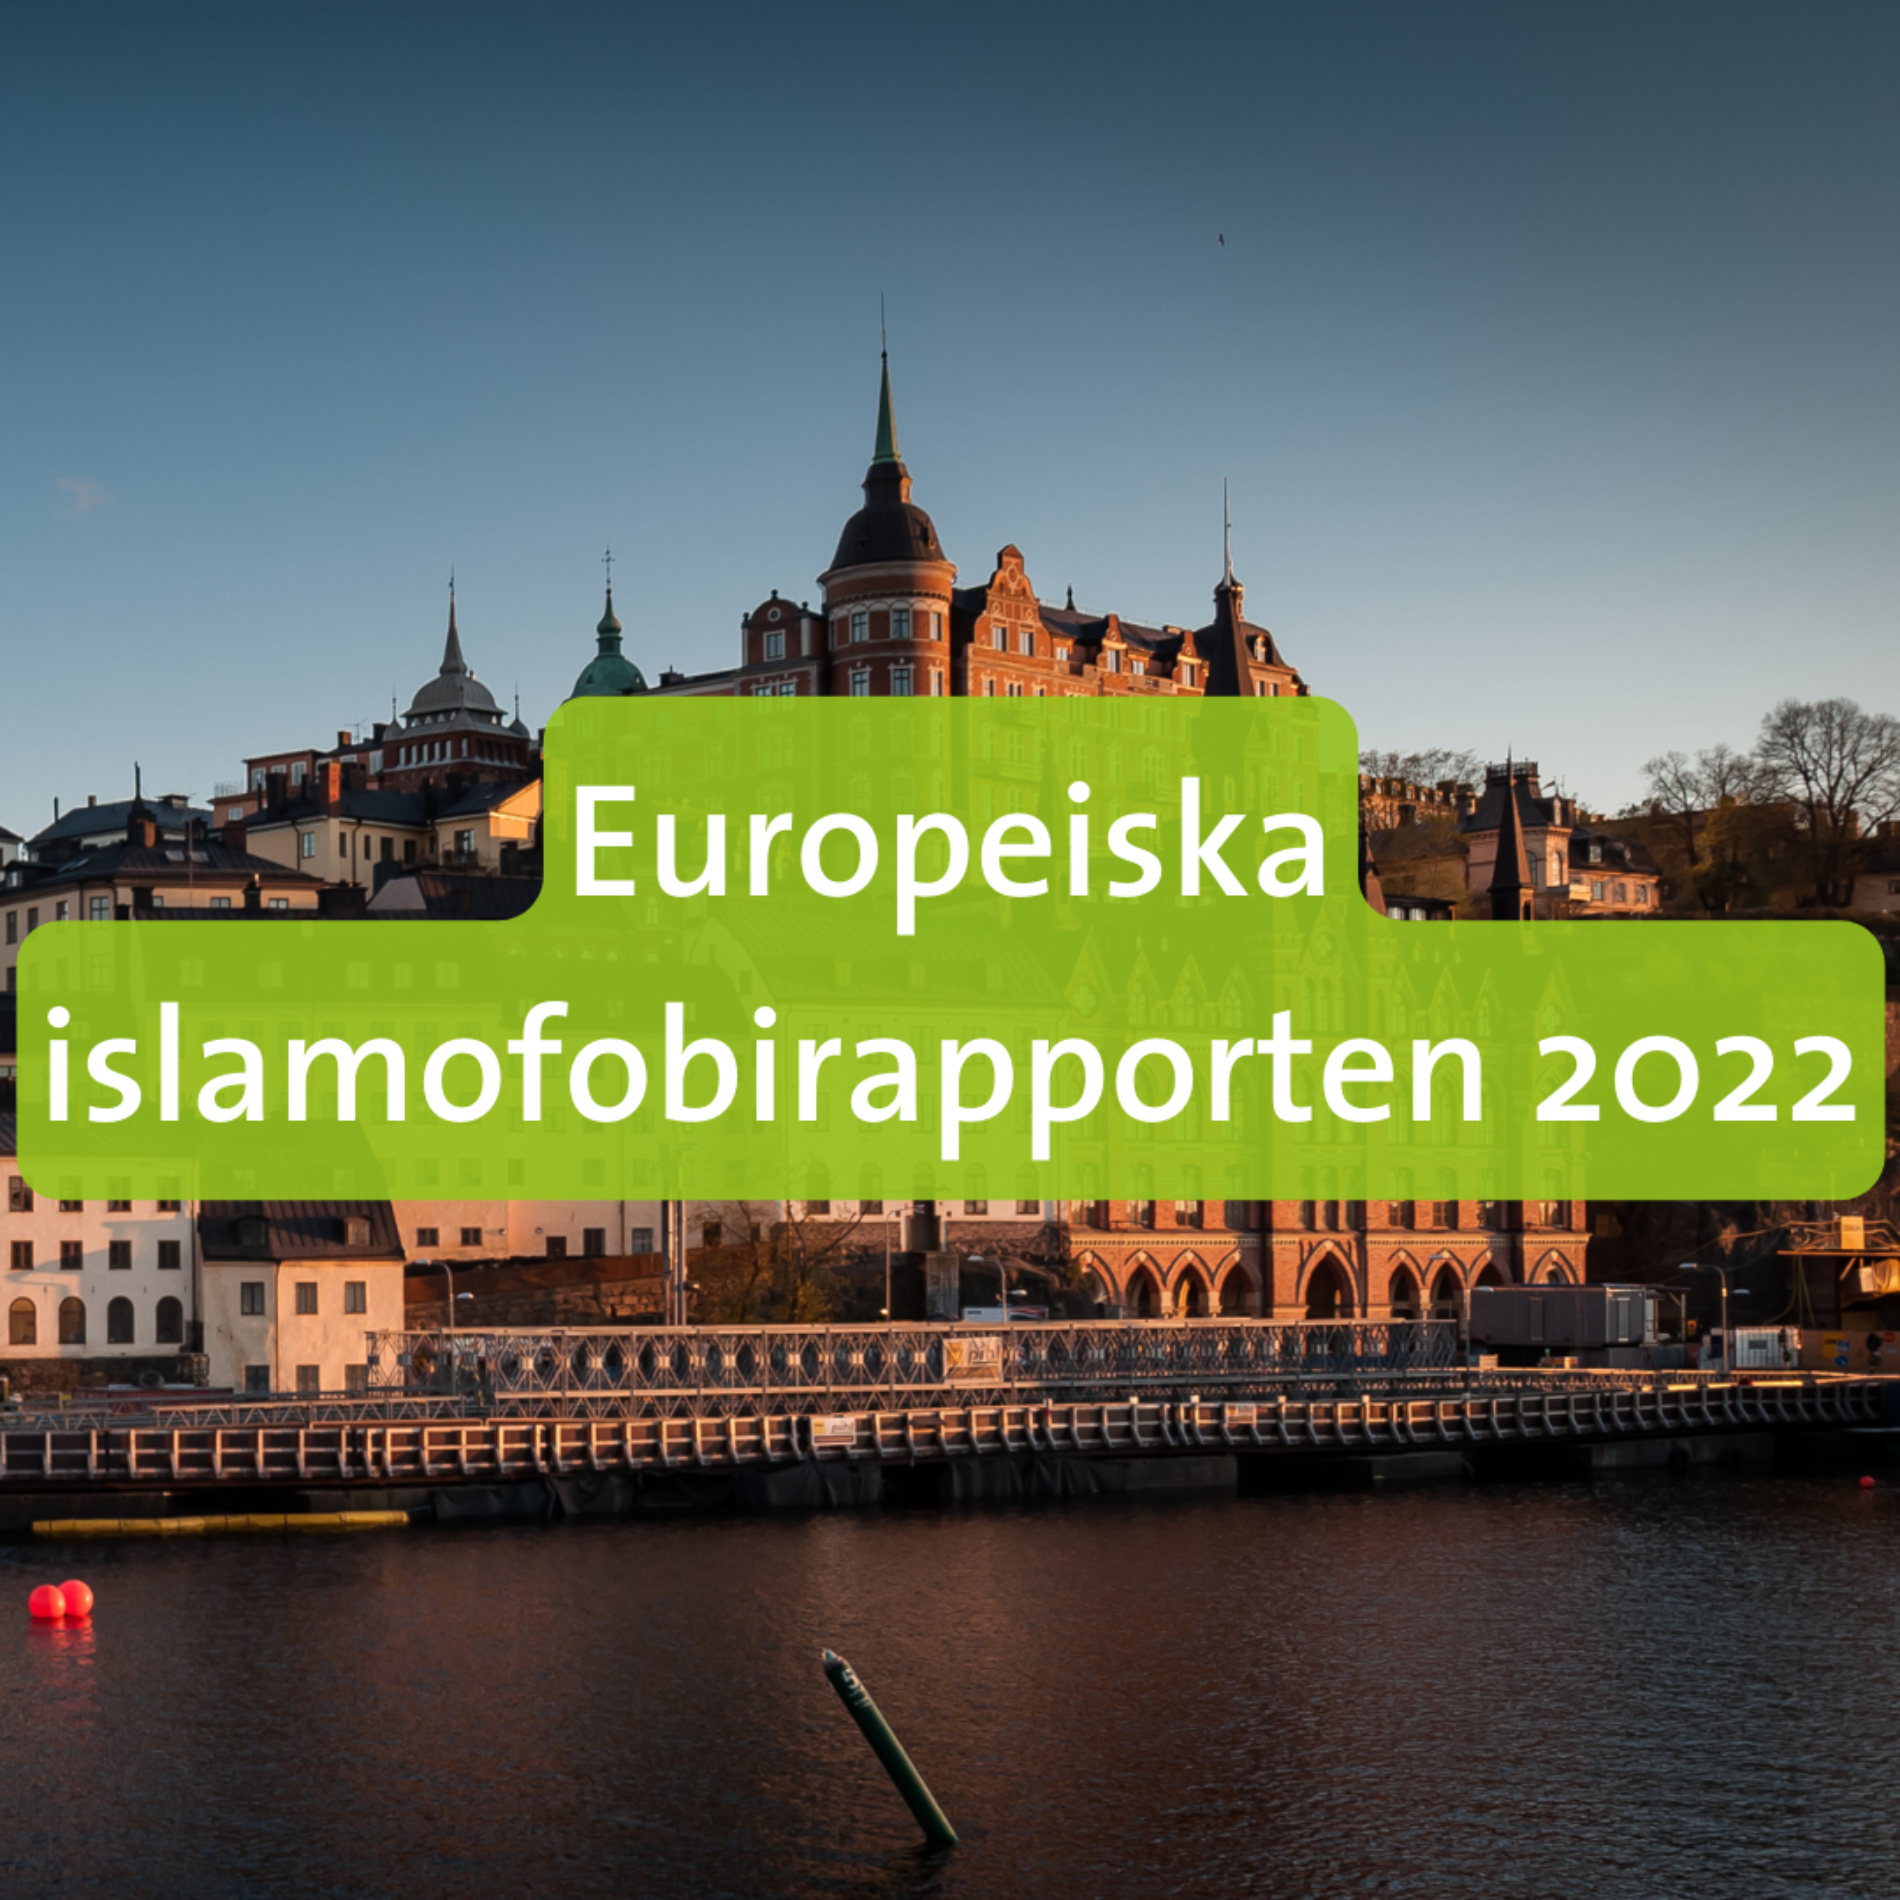 Europeiska islamofobirapporten 2022